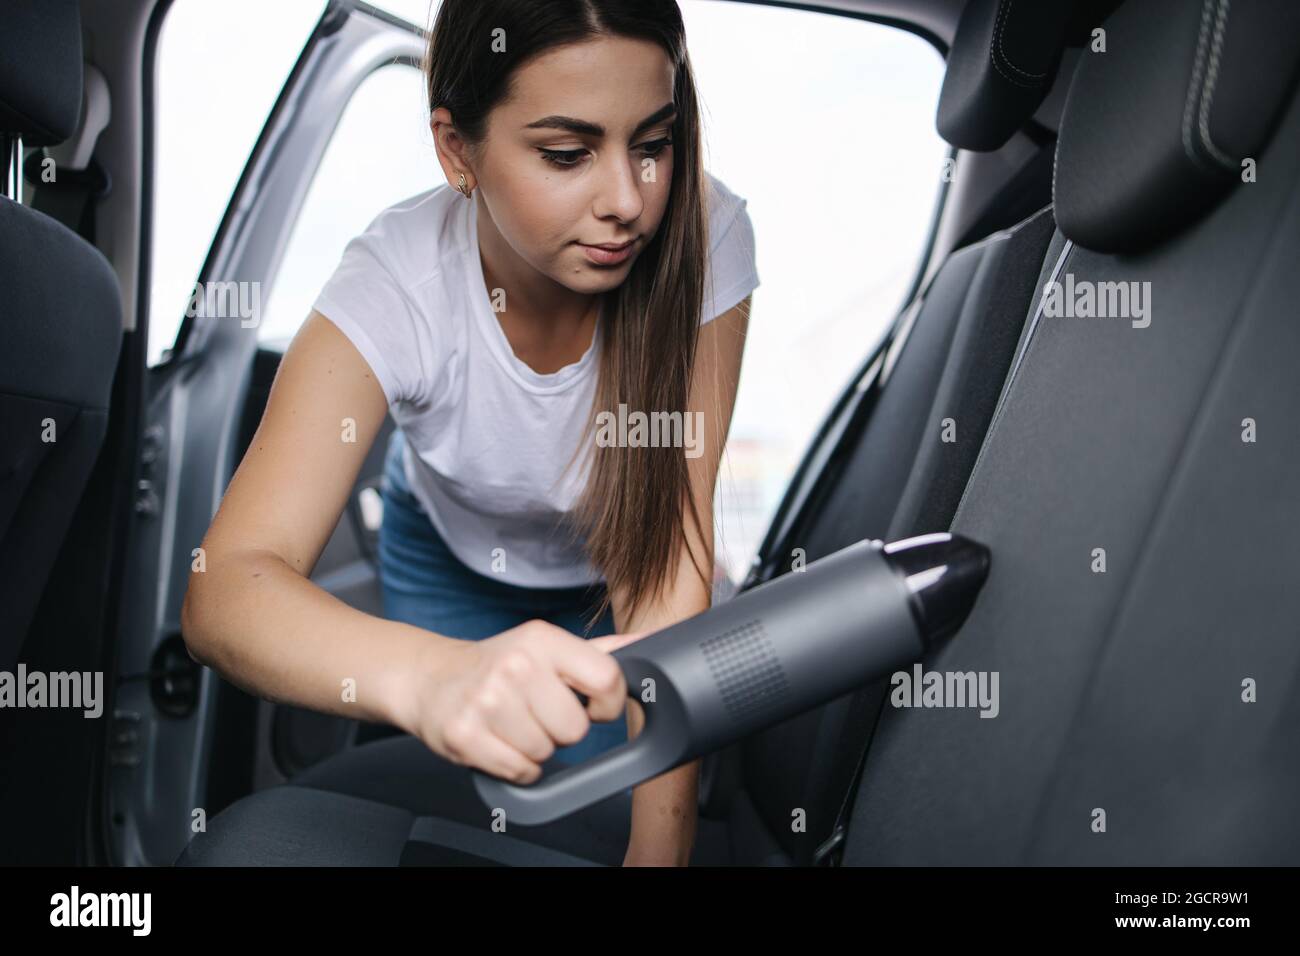 Jeune femme attrayante utilisant un aspirateur portable dans sa voiture.  Femme passant l'aspirateur de sa voiture dans le garage à la maison.  Nettoyage de l'intérieur de la voiture Photo Stock - Alamy